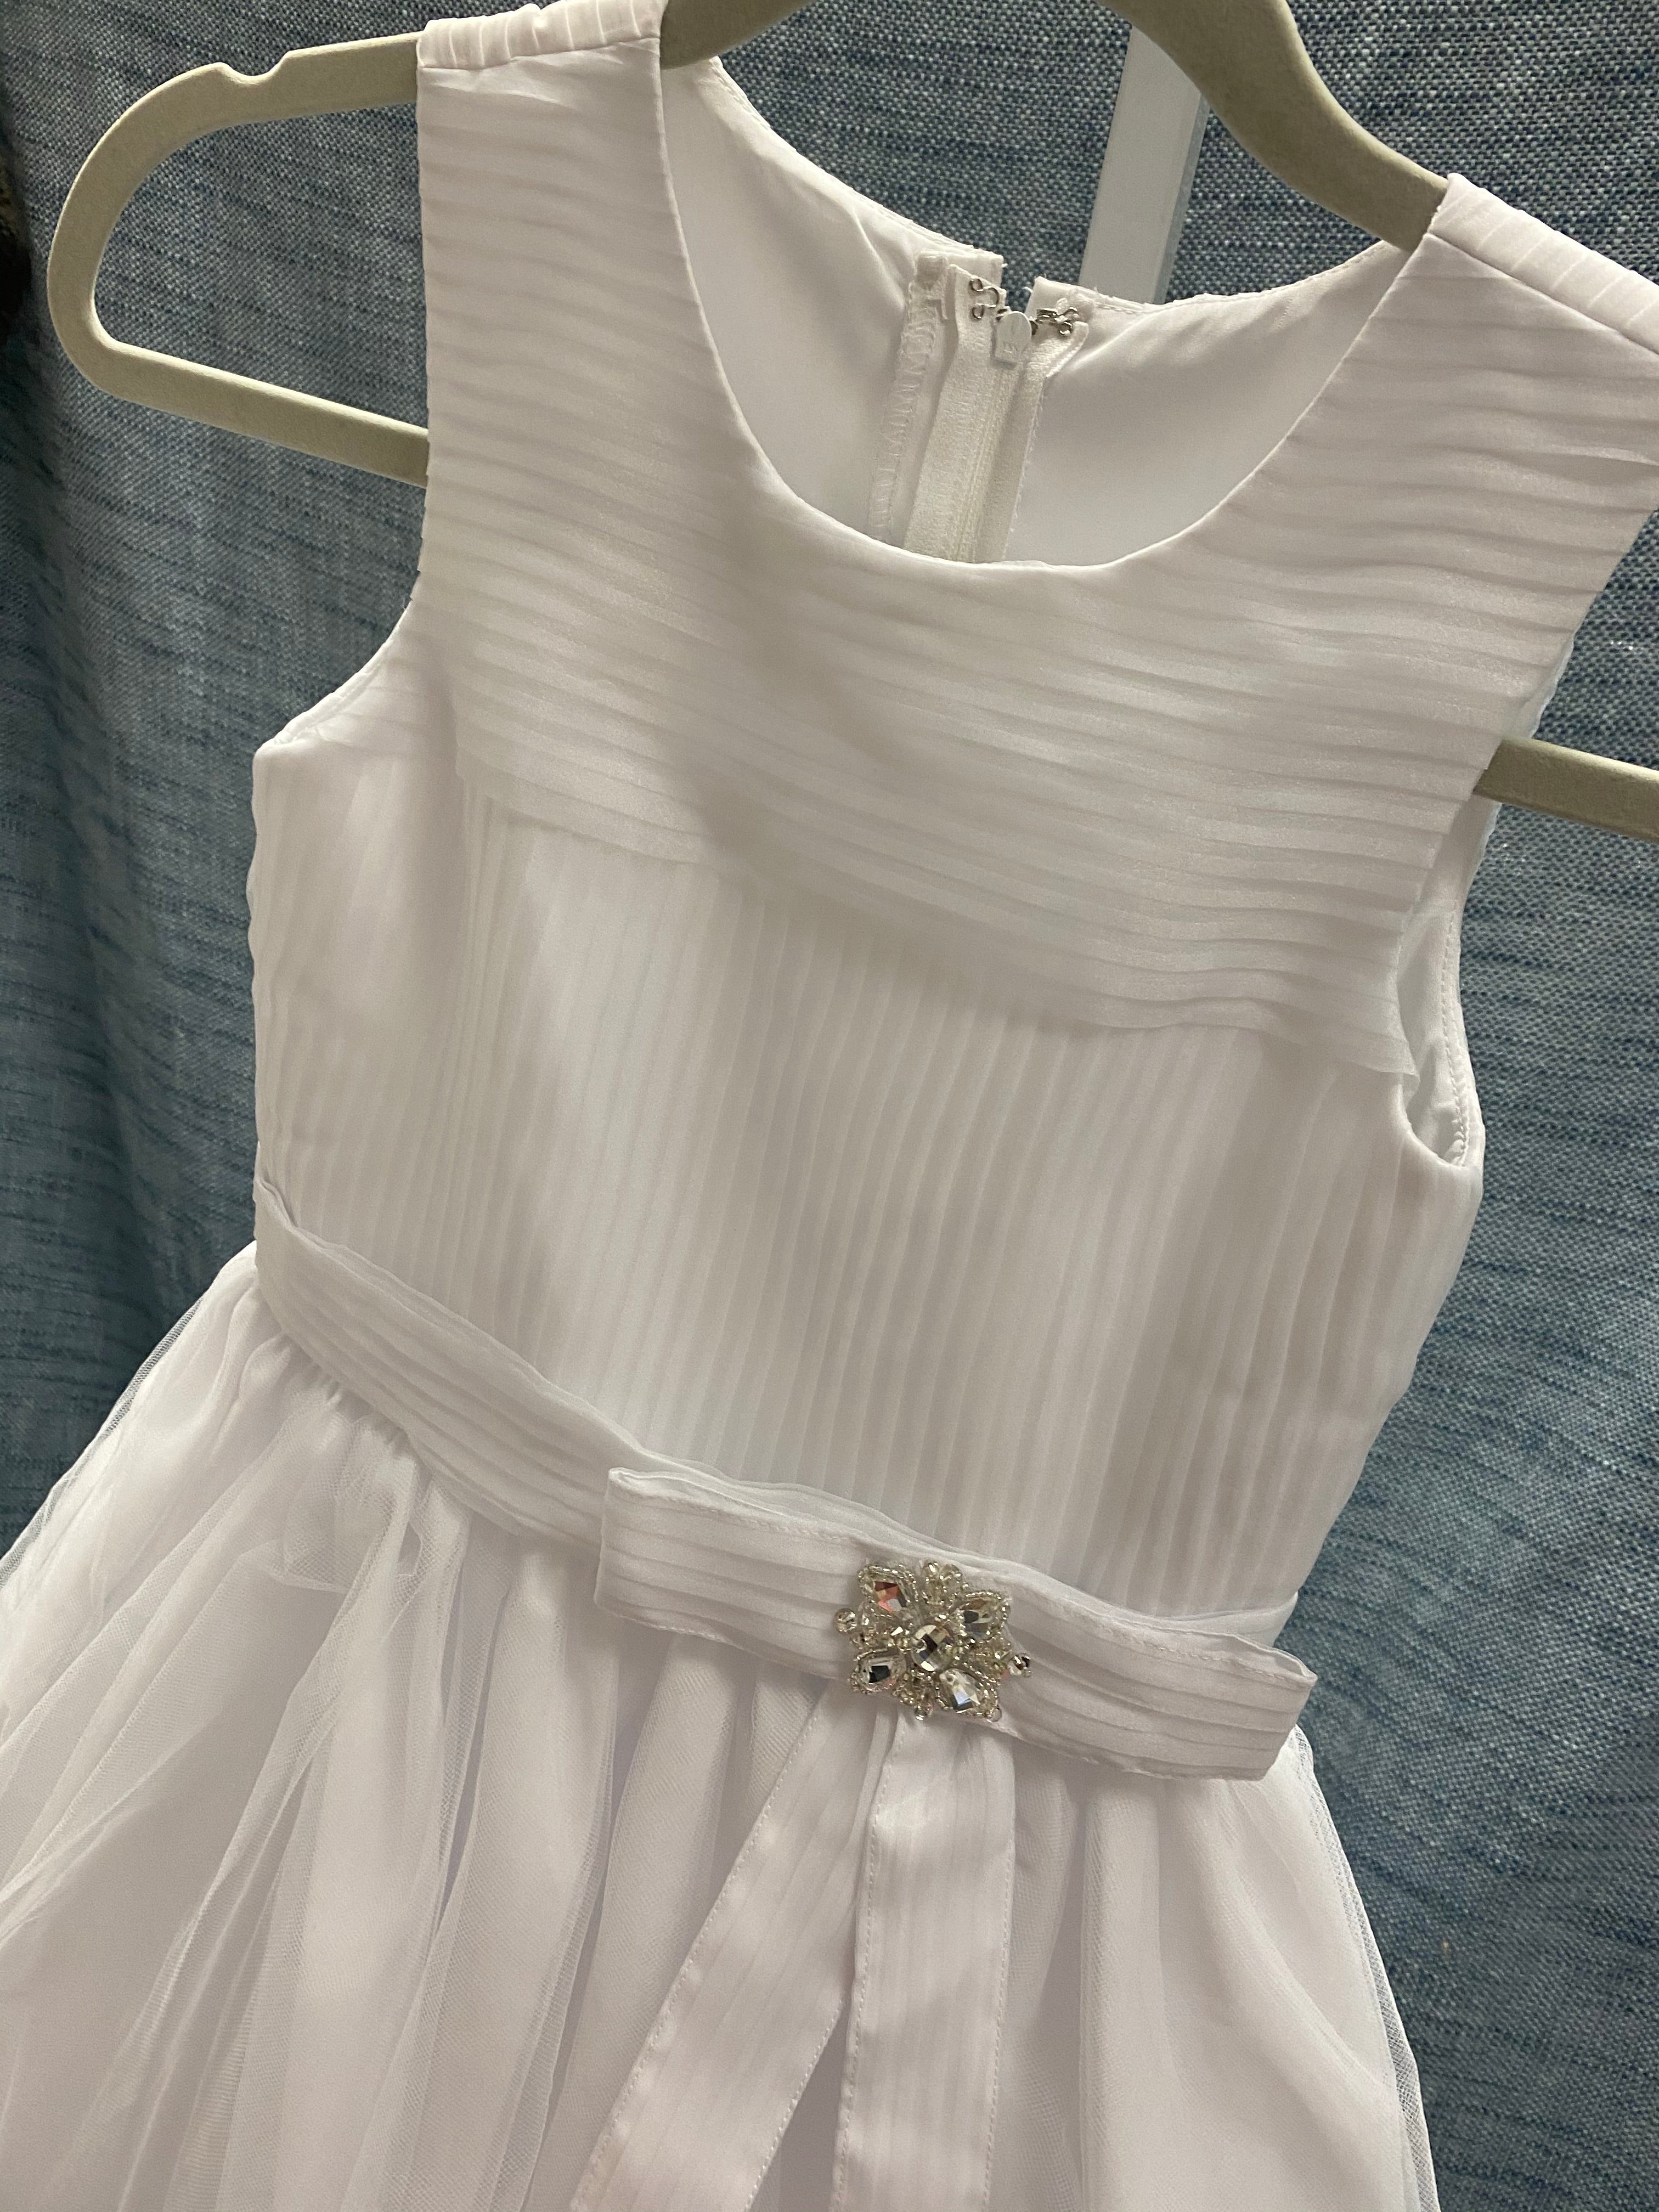 Size 8 white dress #482T